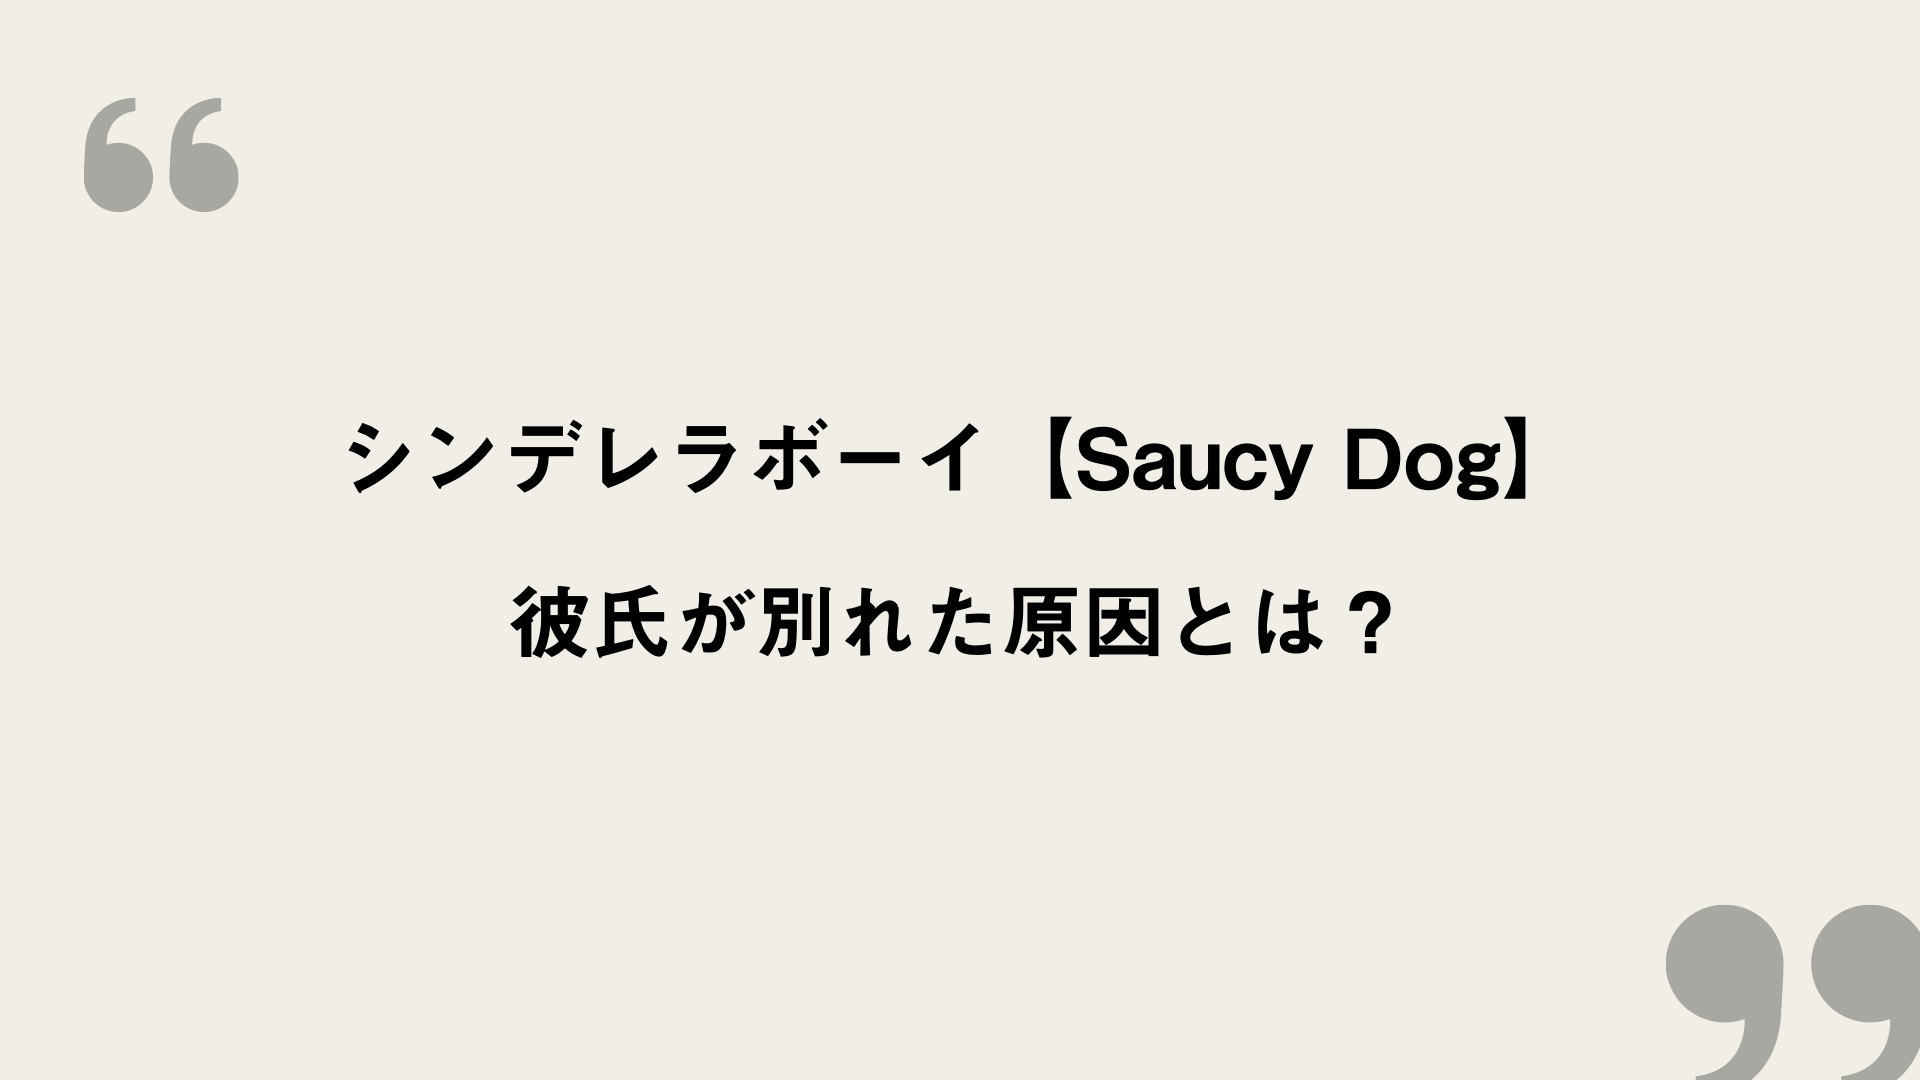 シンデレラボーイ Saucy Dog 歌詞の意味を考察 彼氏が別れた原因とは Framu Media